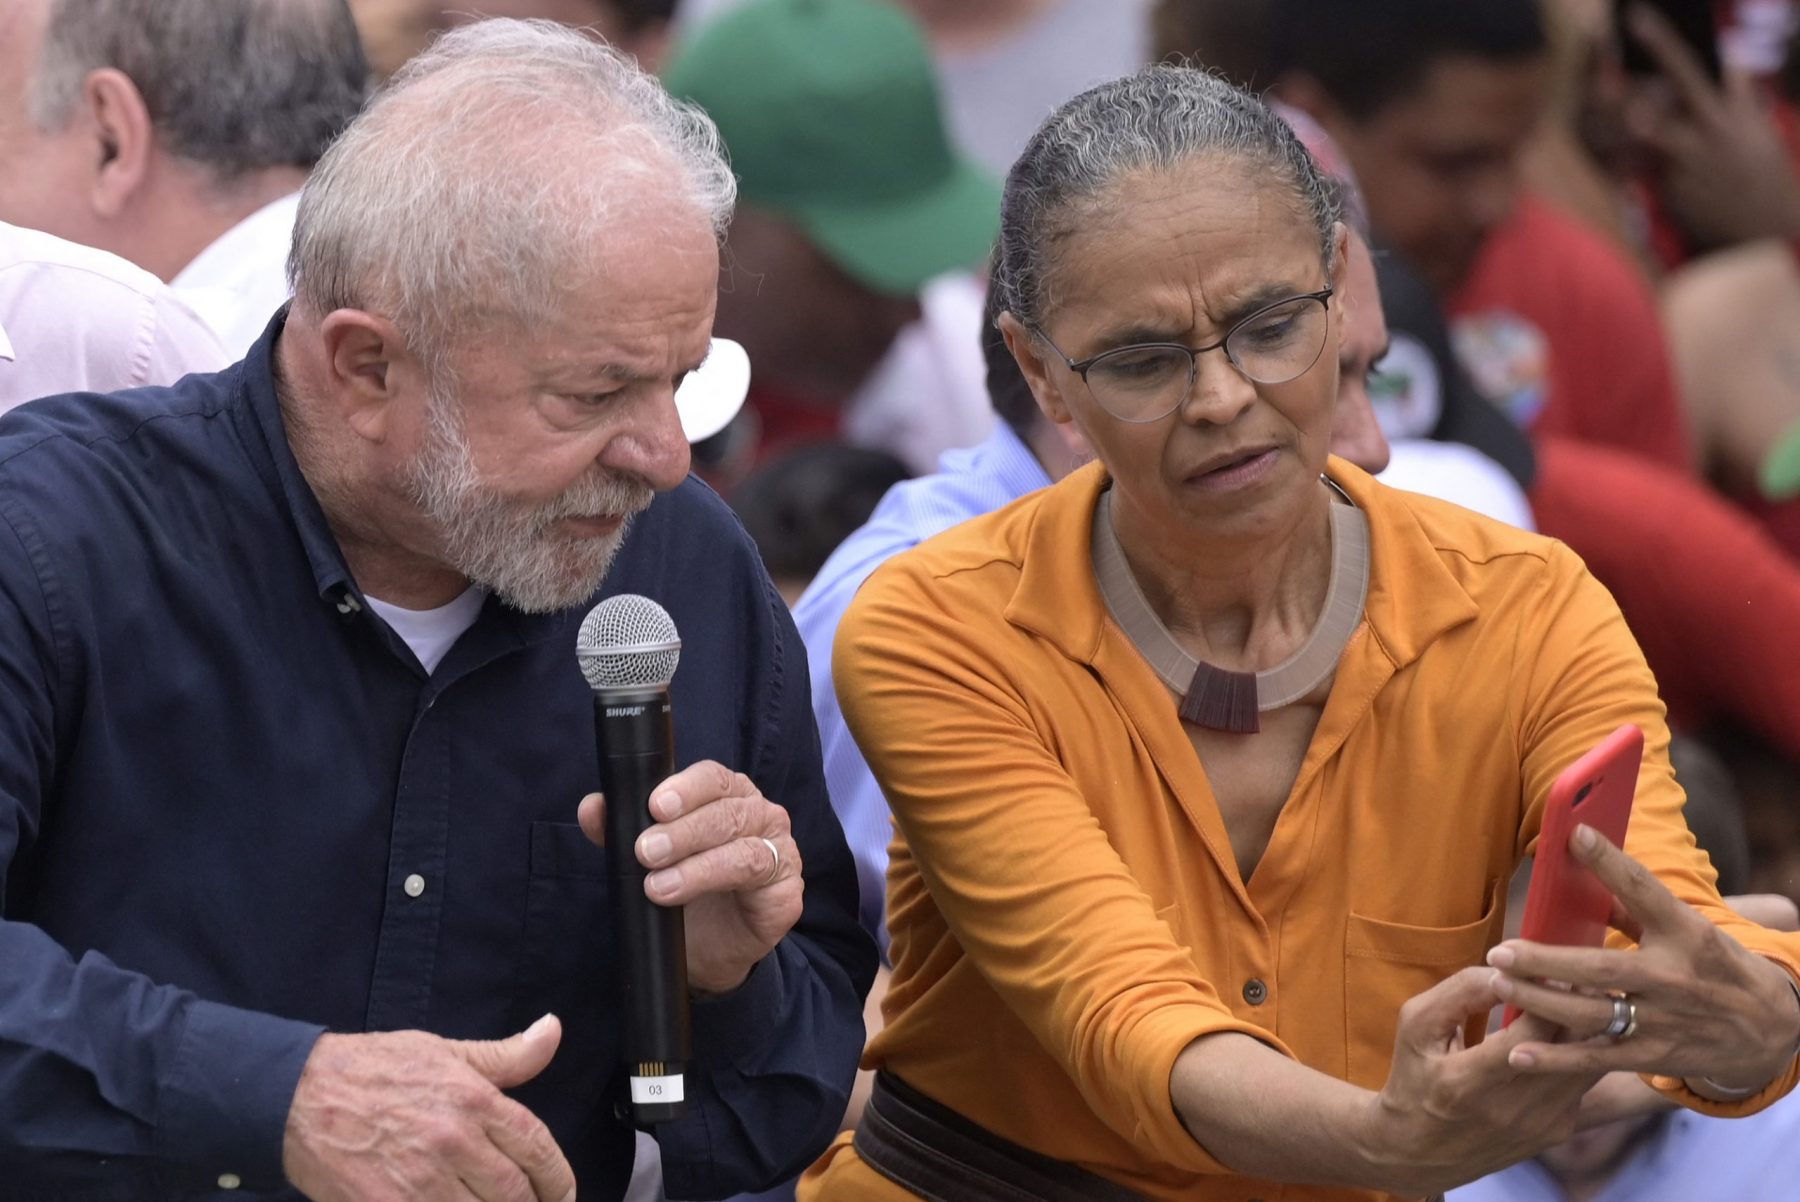 Presidente Lula, precisamos tirar o meio ambiente do cercadinho